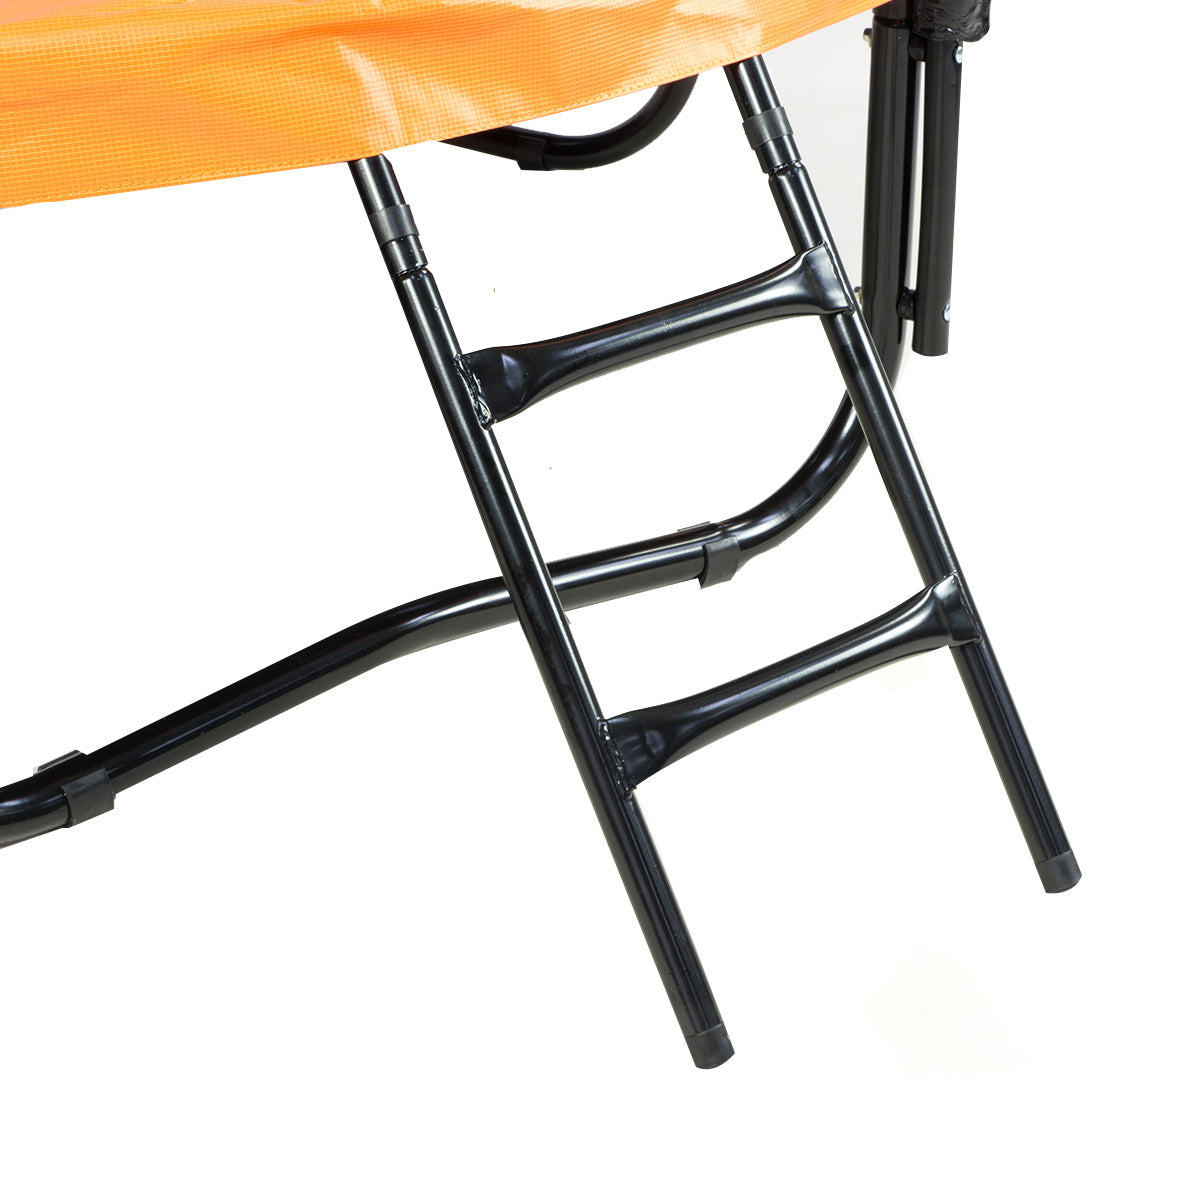 Kahuna 12ft Outdoor Trampoline Kids Children With Safety Enclosure Pad Mat Ladder Basketball Hoop Set - Orange